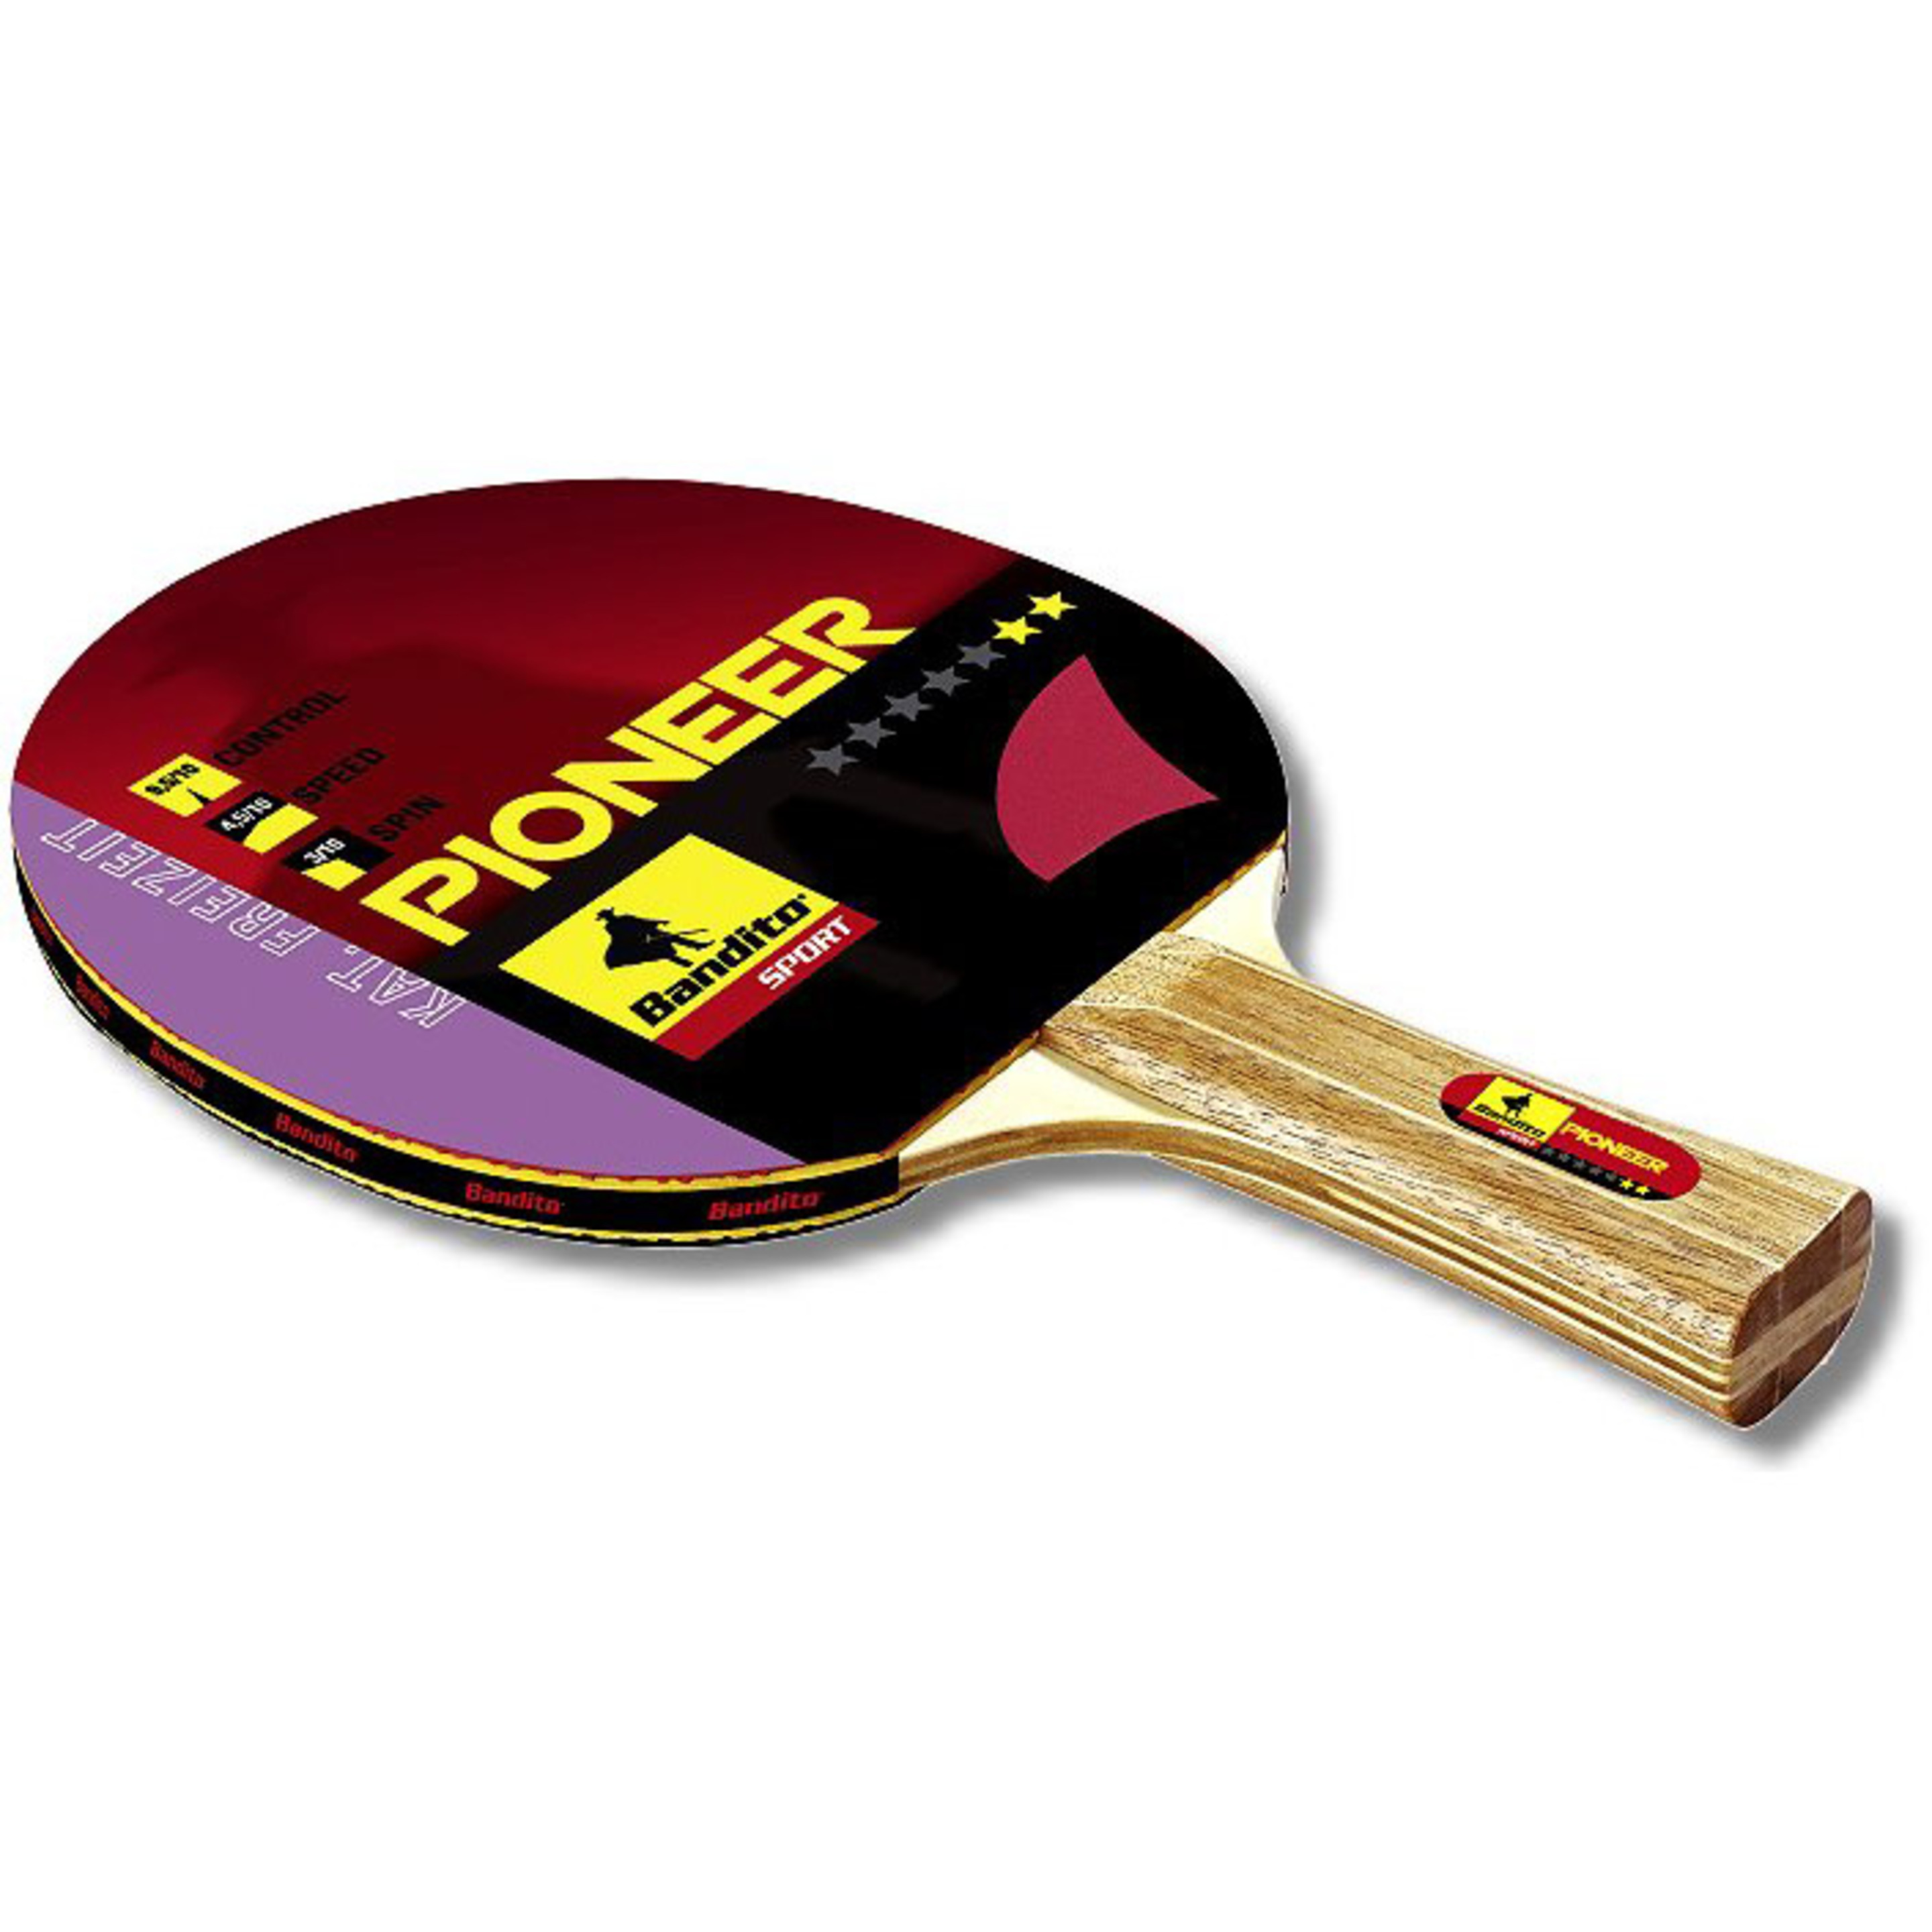 Pack 2 Pala Ping Pong + 3 Bolas Bandito Sport Pioneer  4112.02